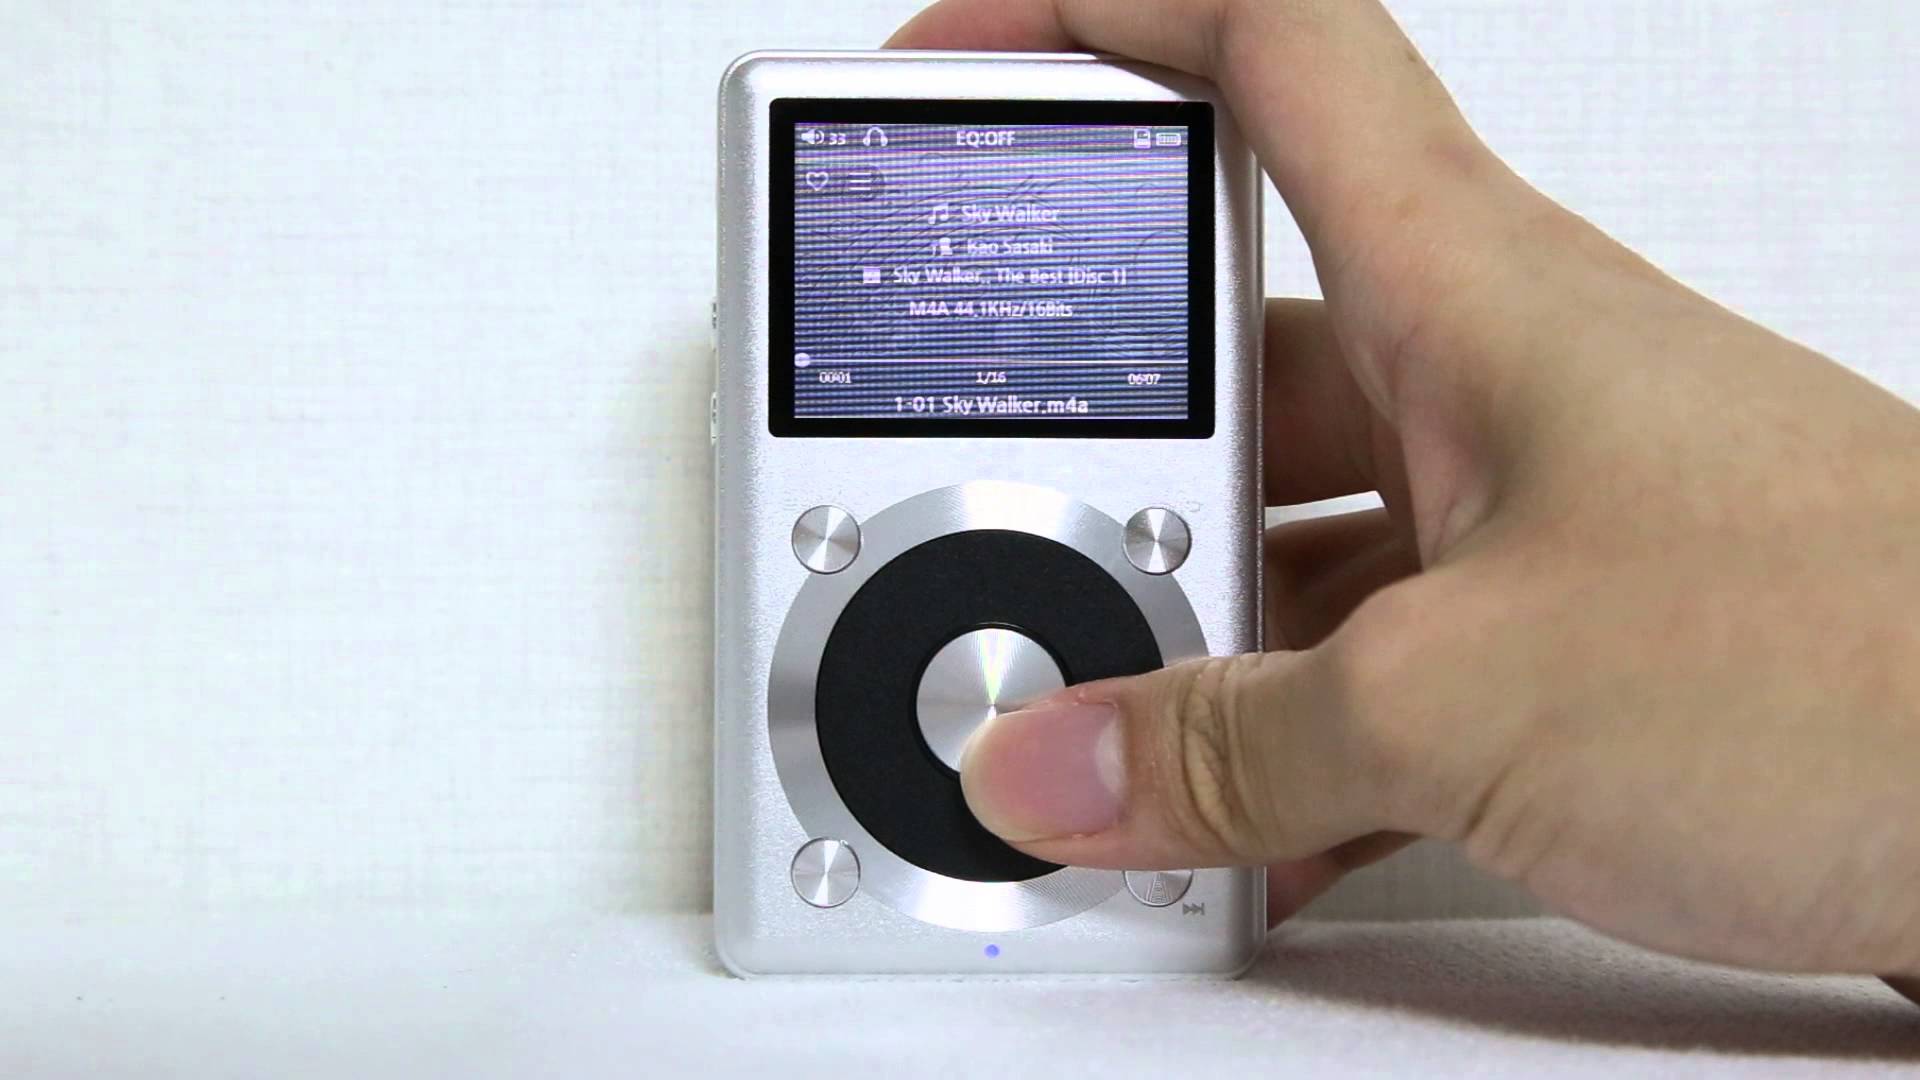 Отзывы и обзор MP3 плеера Fiio X1